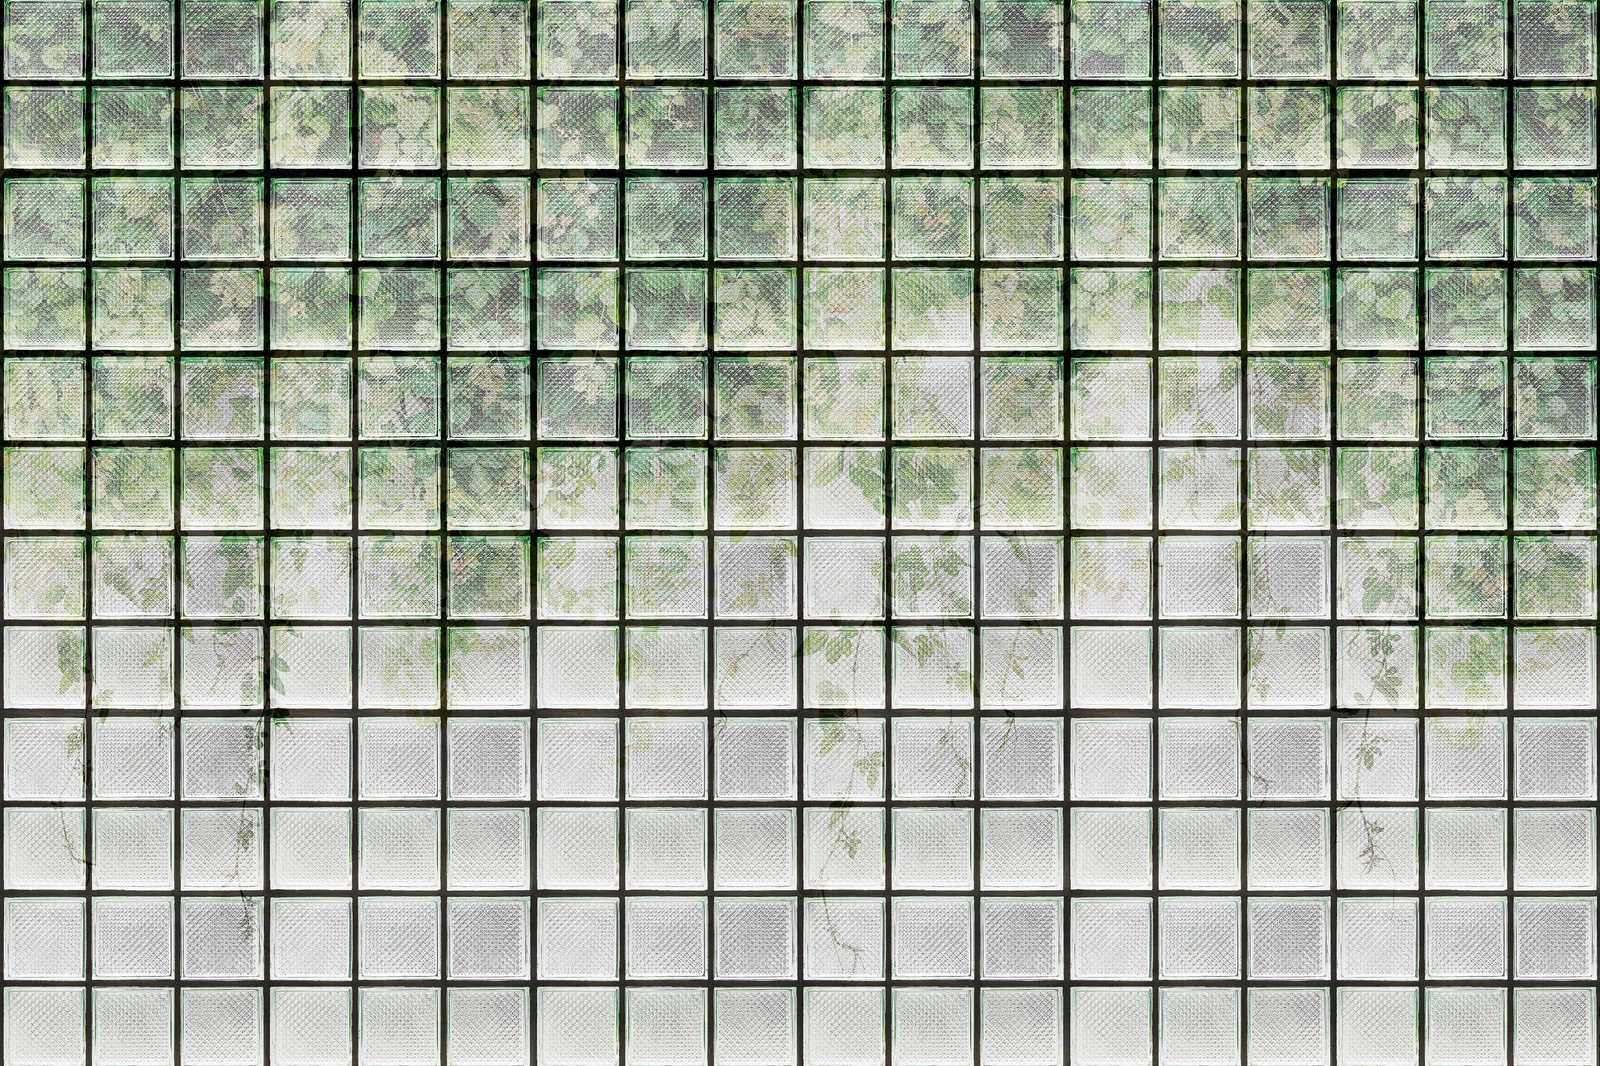             Green House 2 - Gewächshaus Leinwandbild Blätter & Glasbausteine – 0,90 m x 0,60 m
        